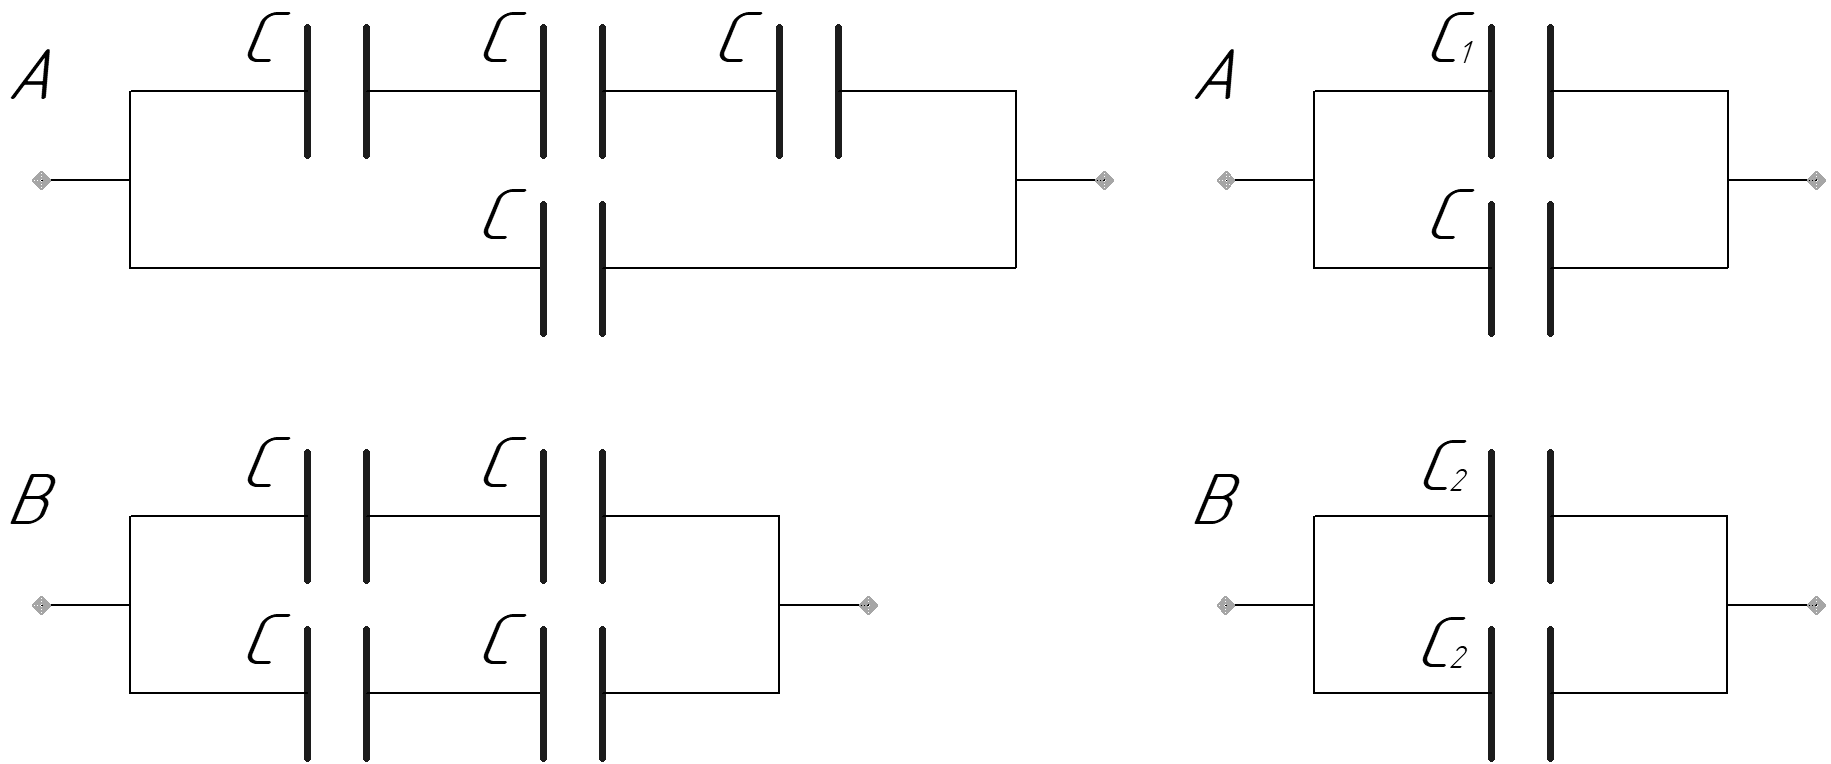 Три одинаковых конденсатора соединены